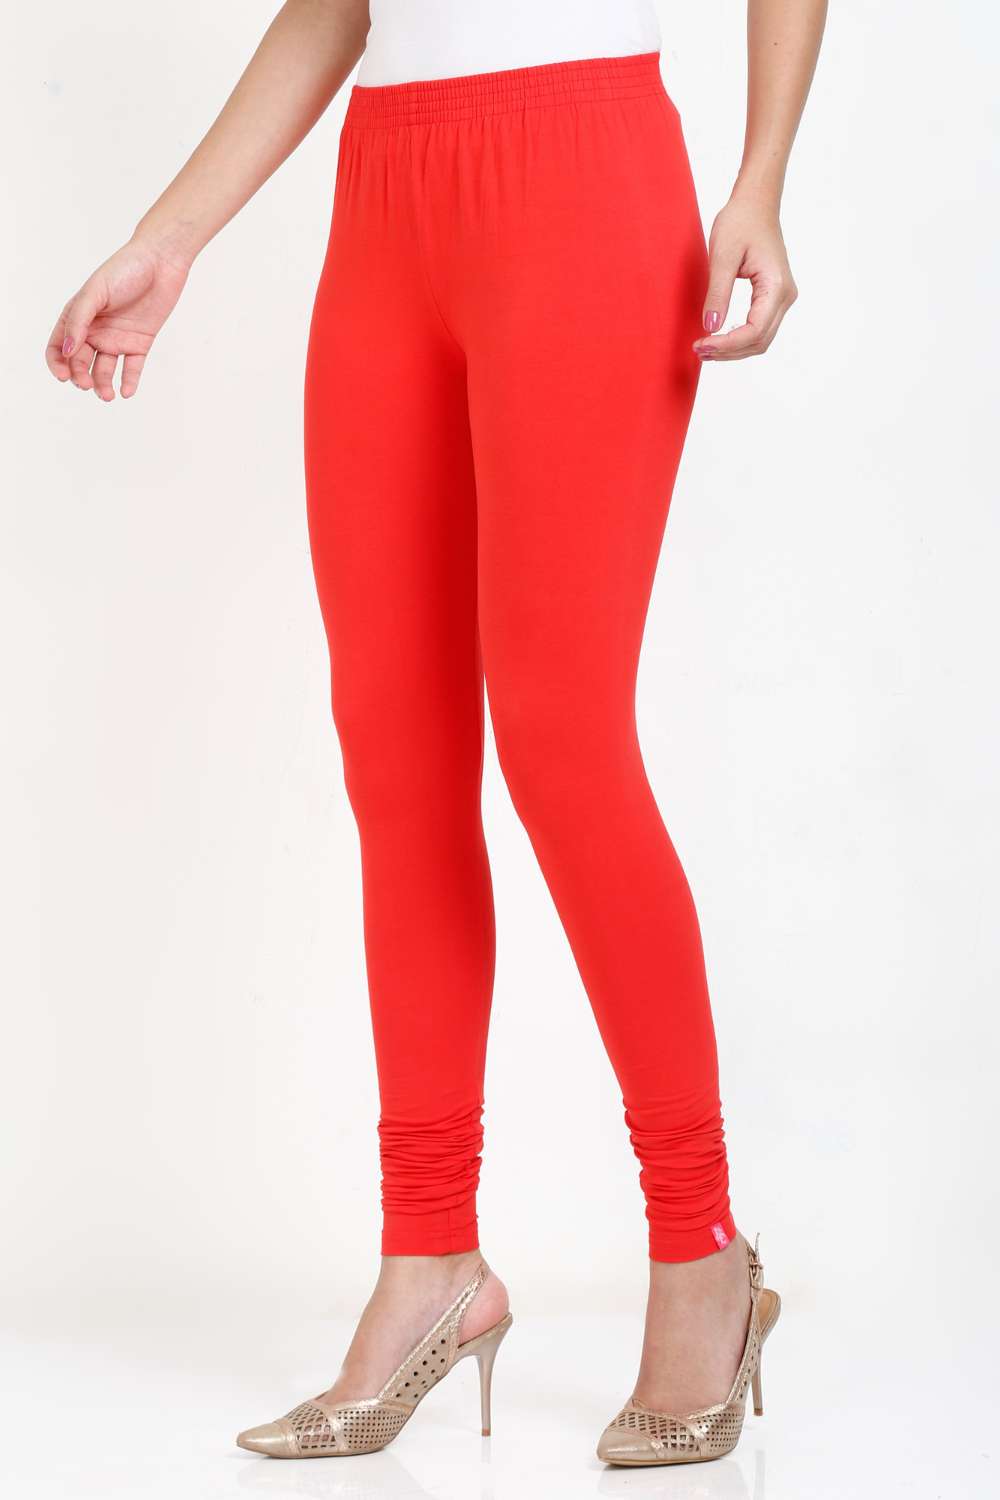 Women's Cotton Lycra Orange Full length legging